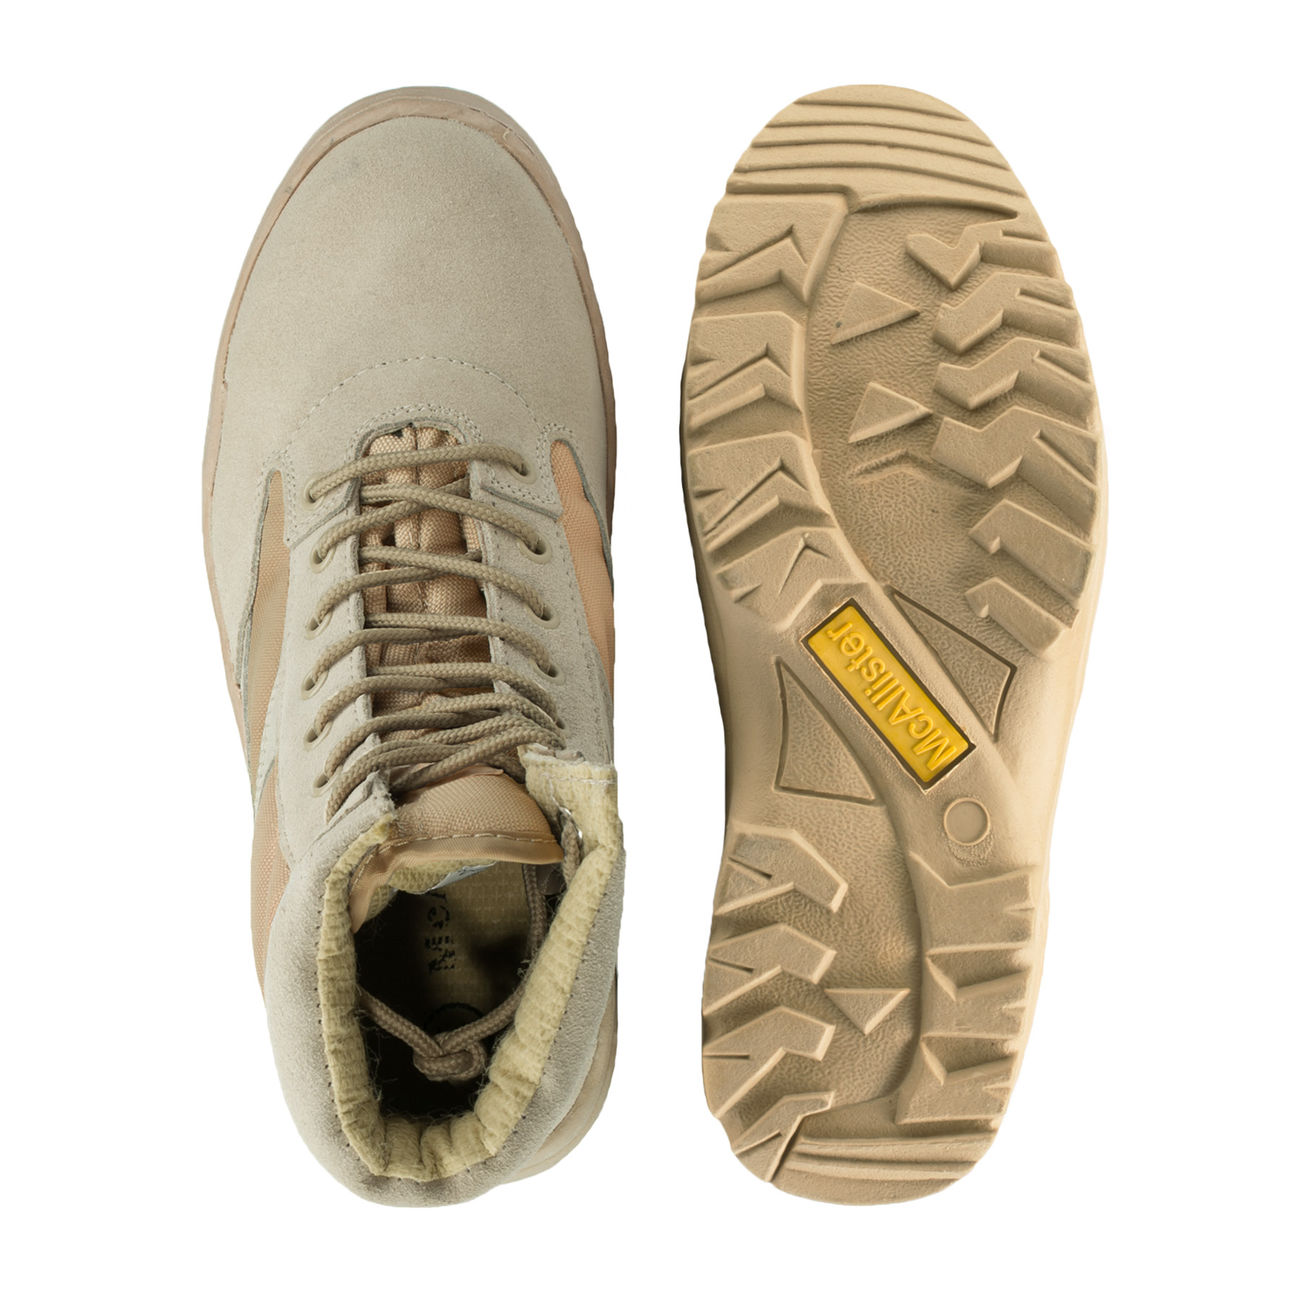 McAllister Outdoor Boots Stiefel sand Bild 1